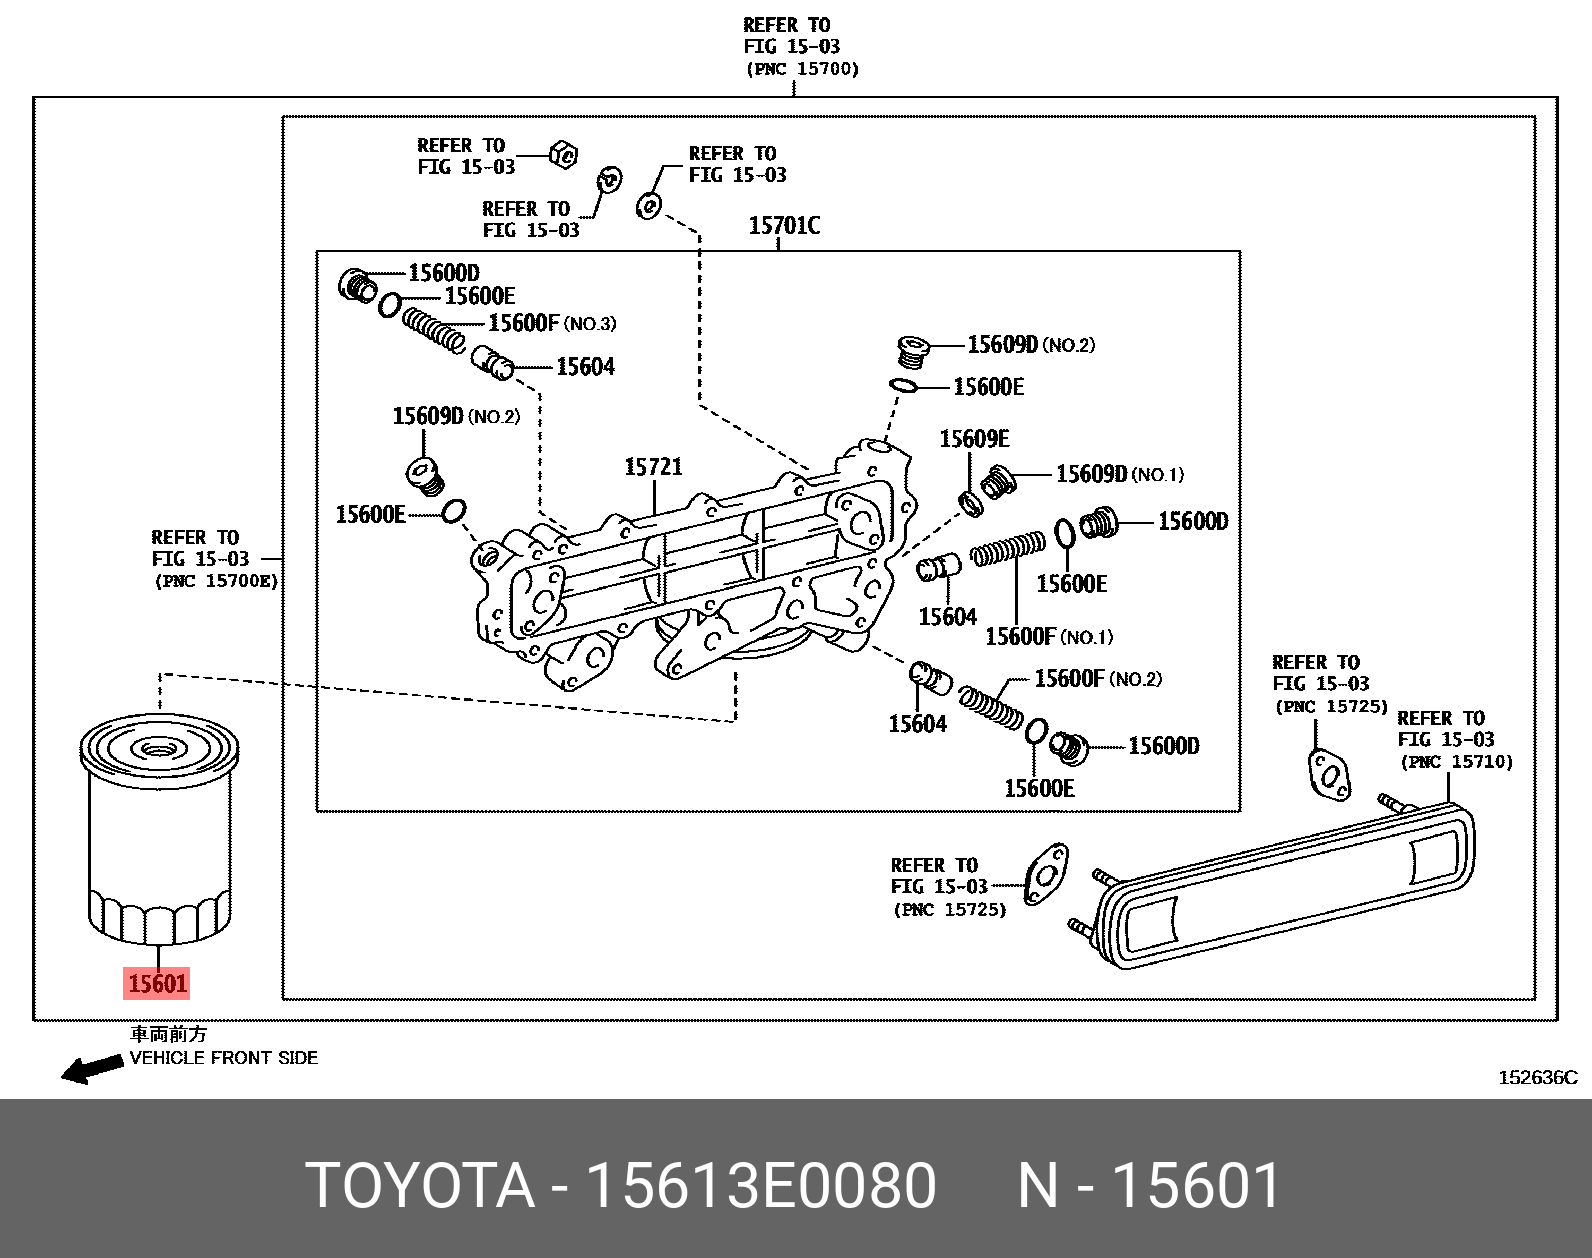 Фильтр масляный - Toyota 15613-E0080